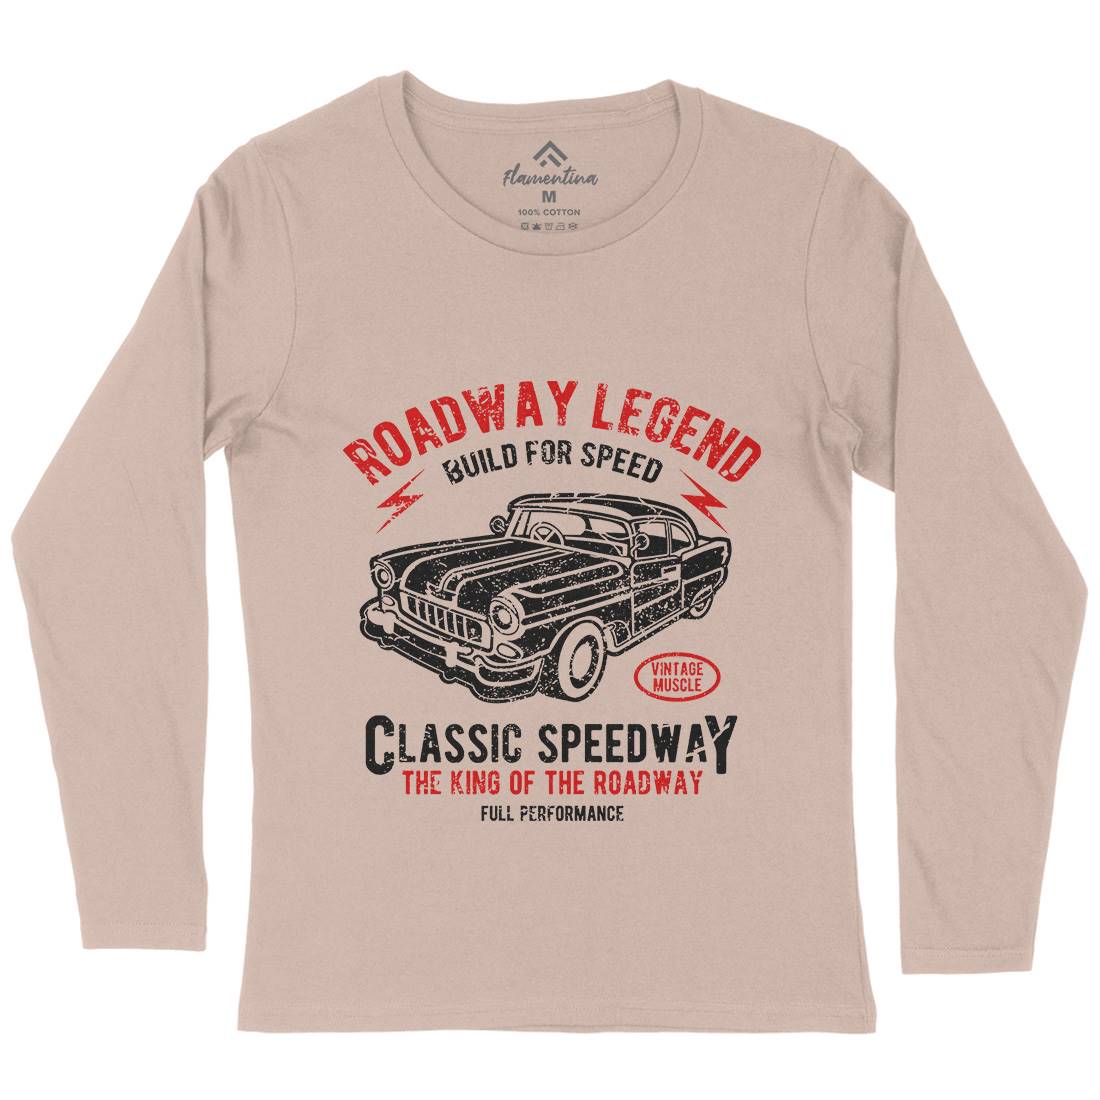 Roadway Legend Womens Long Sleeve T-Shirt Cars A124